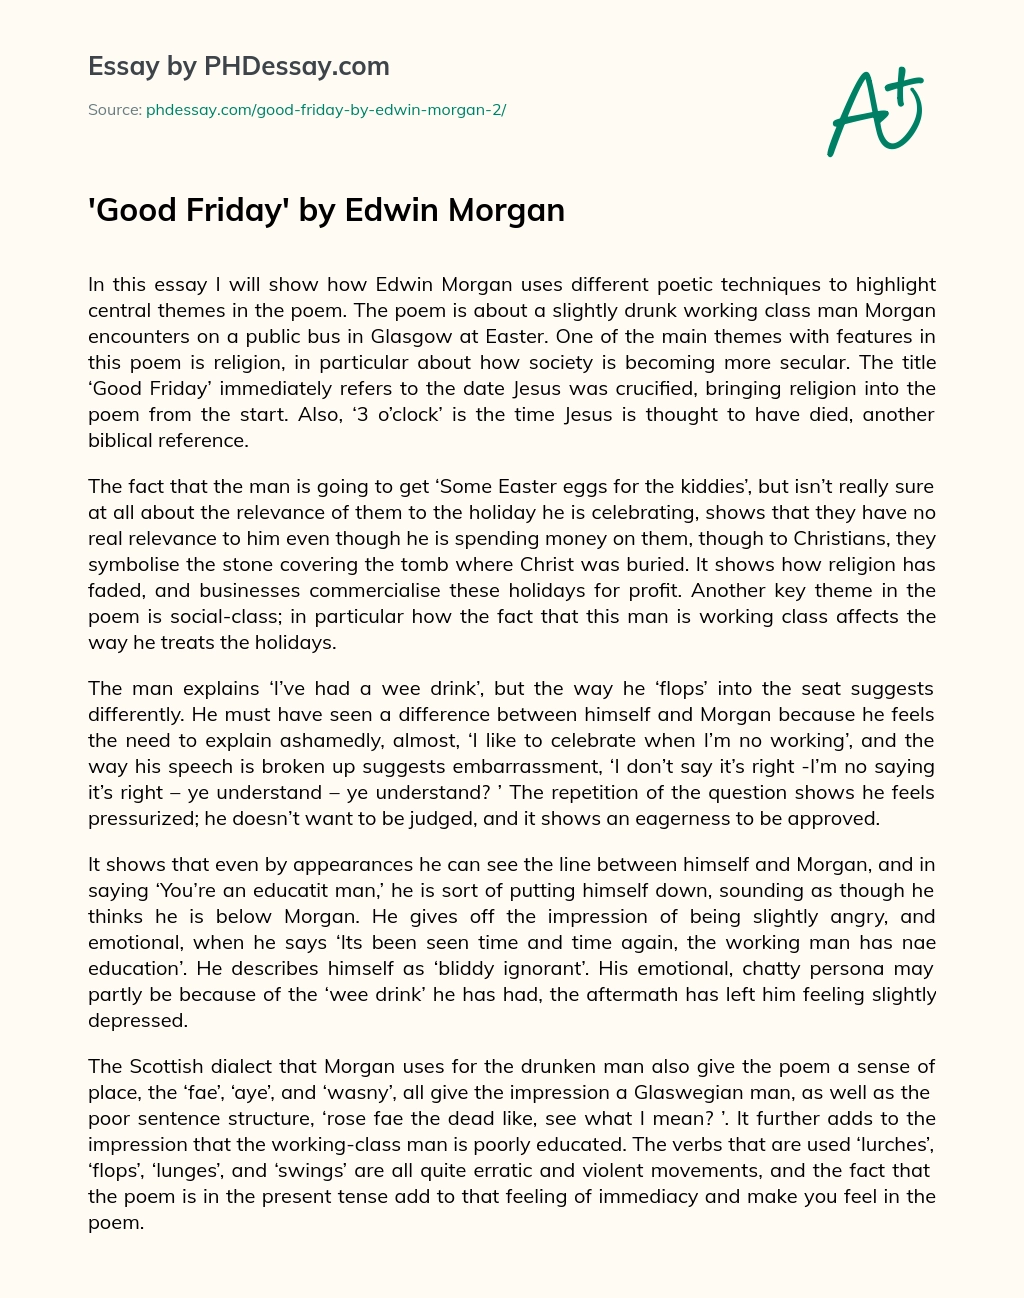 Good Friday by Edwin Morgan essay